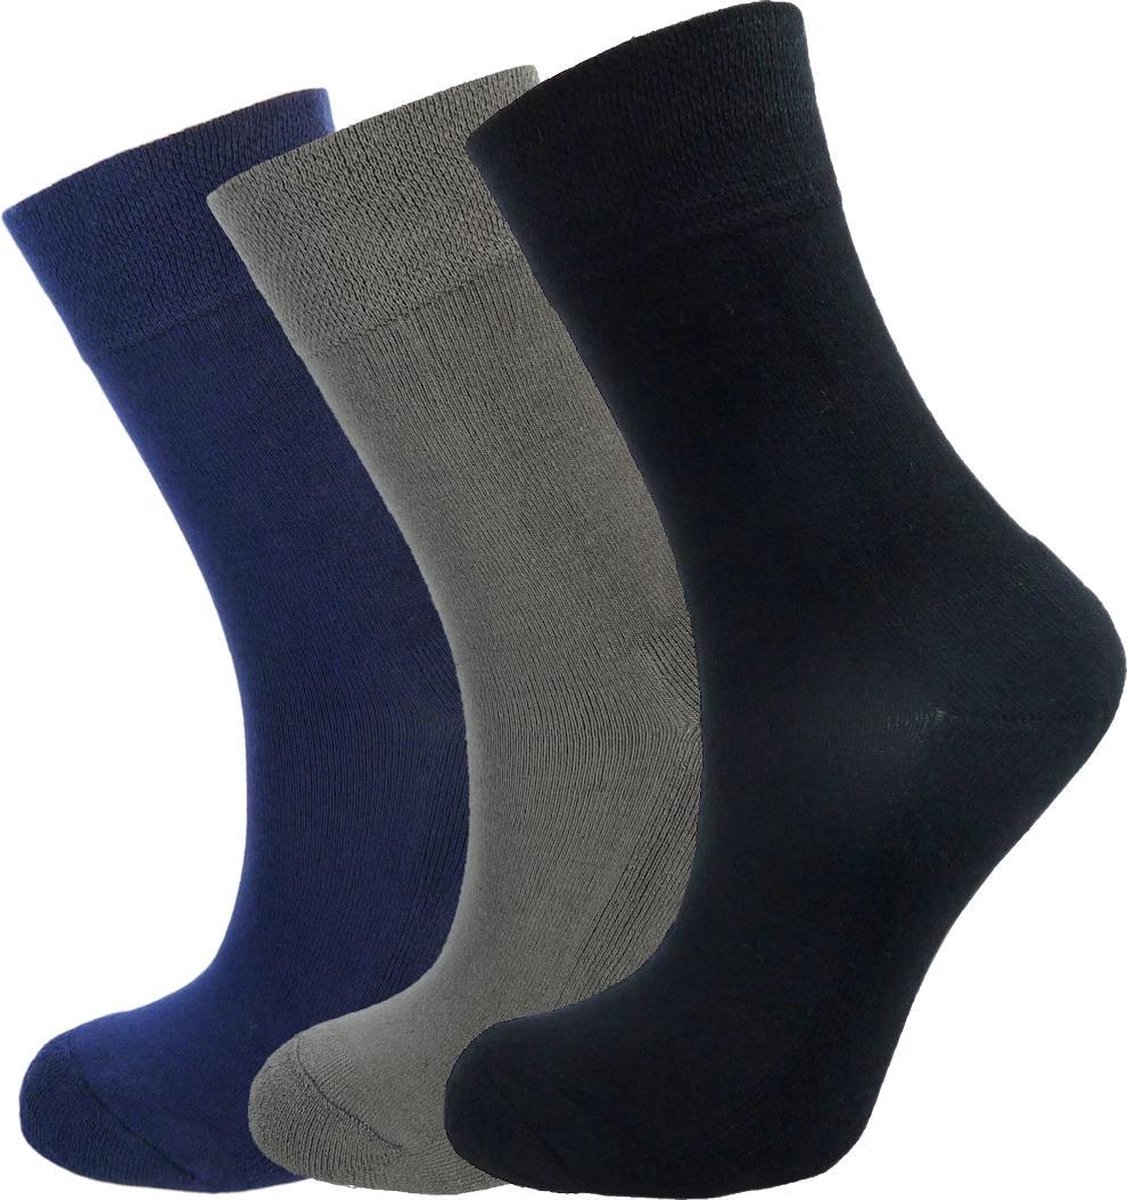 Bamboe sokken - 3 paar - zwart, grijs en navy blauw - maat 37-40